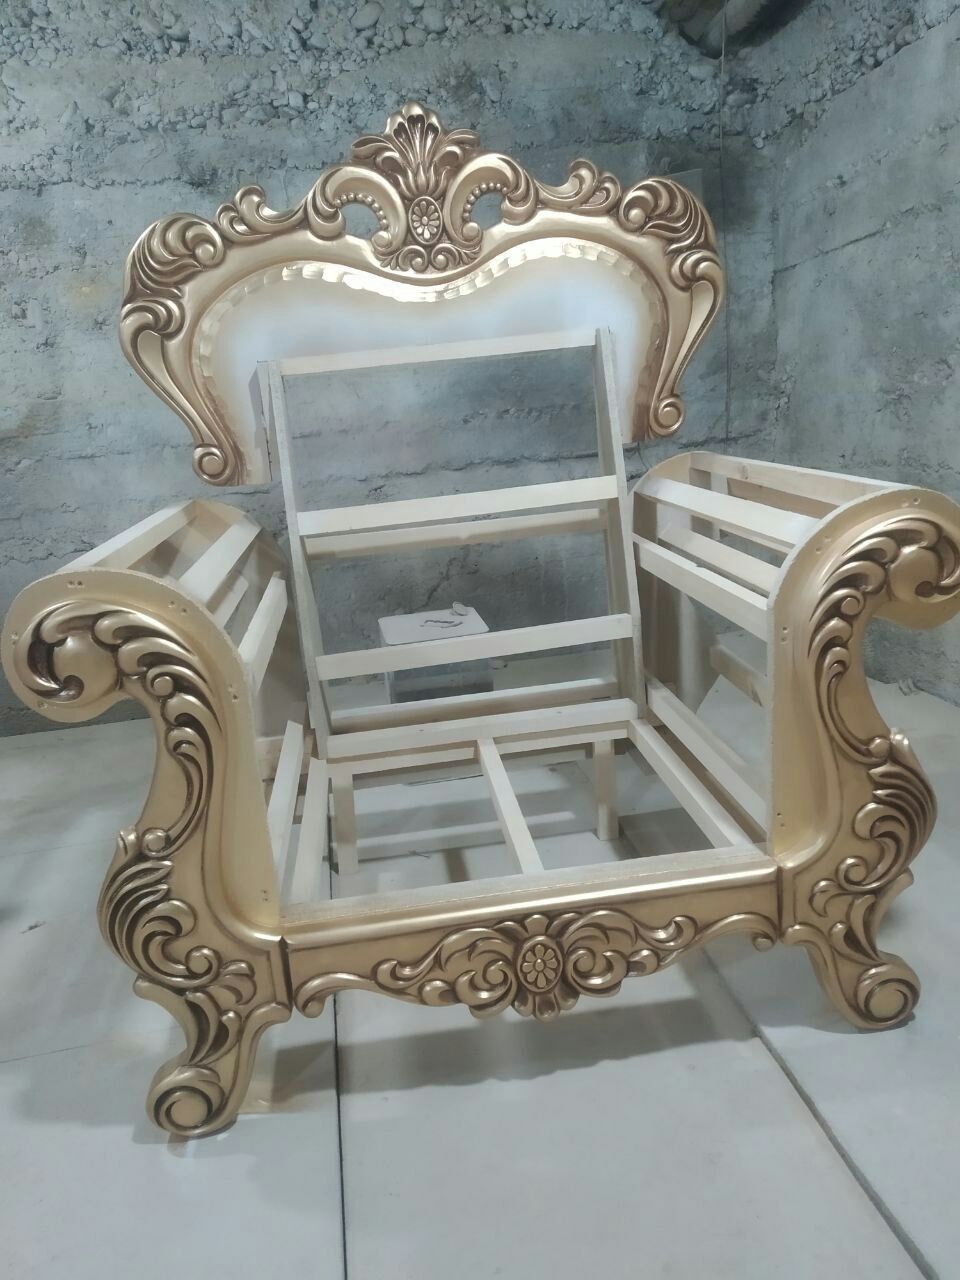 Мягкая мебель на заказ